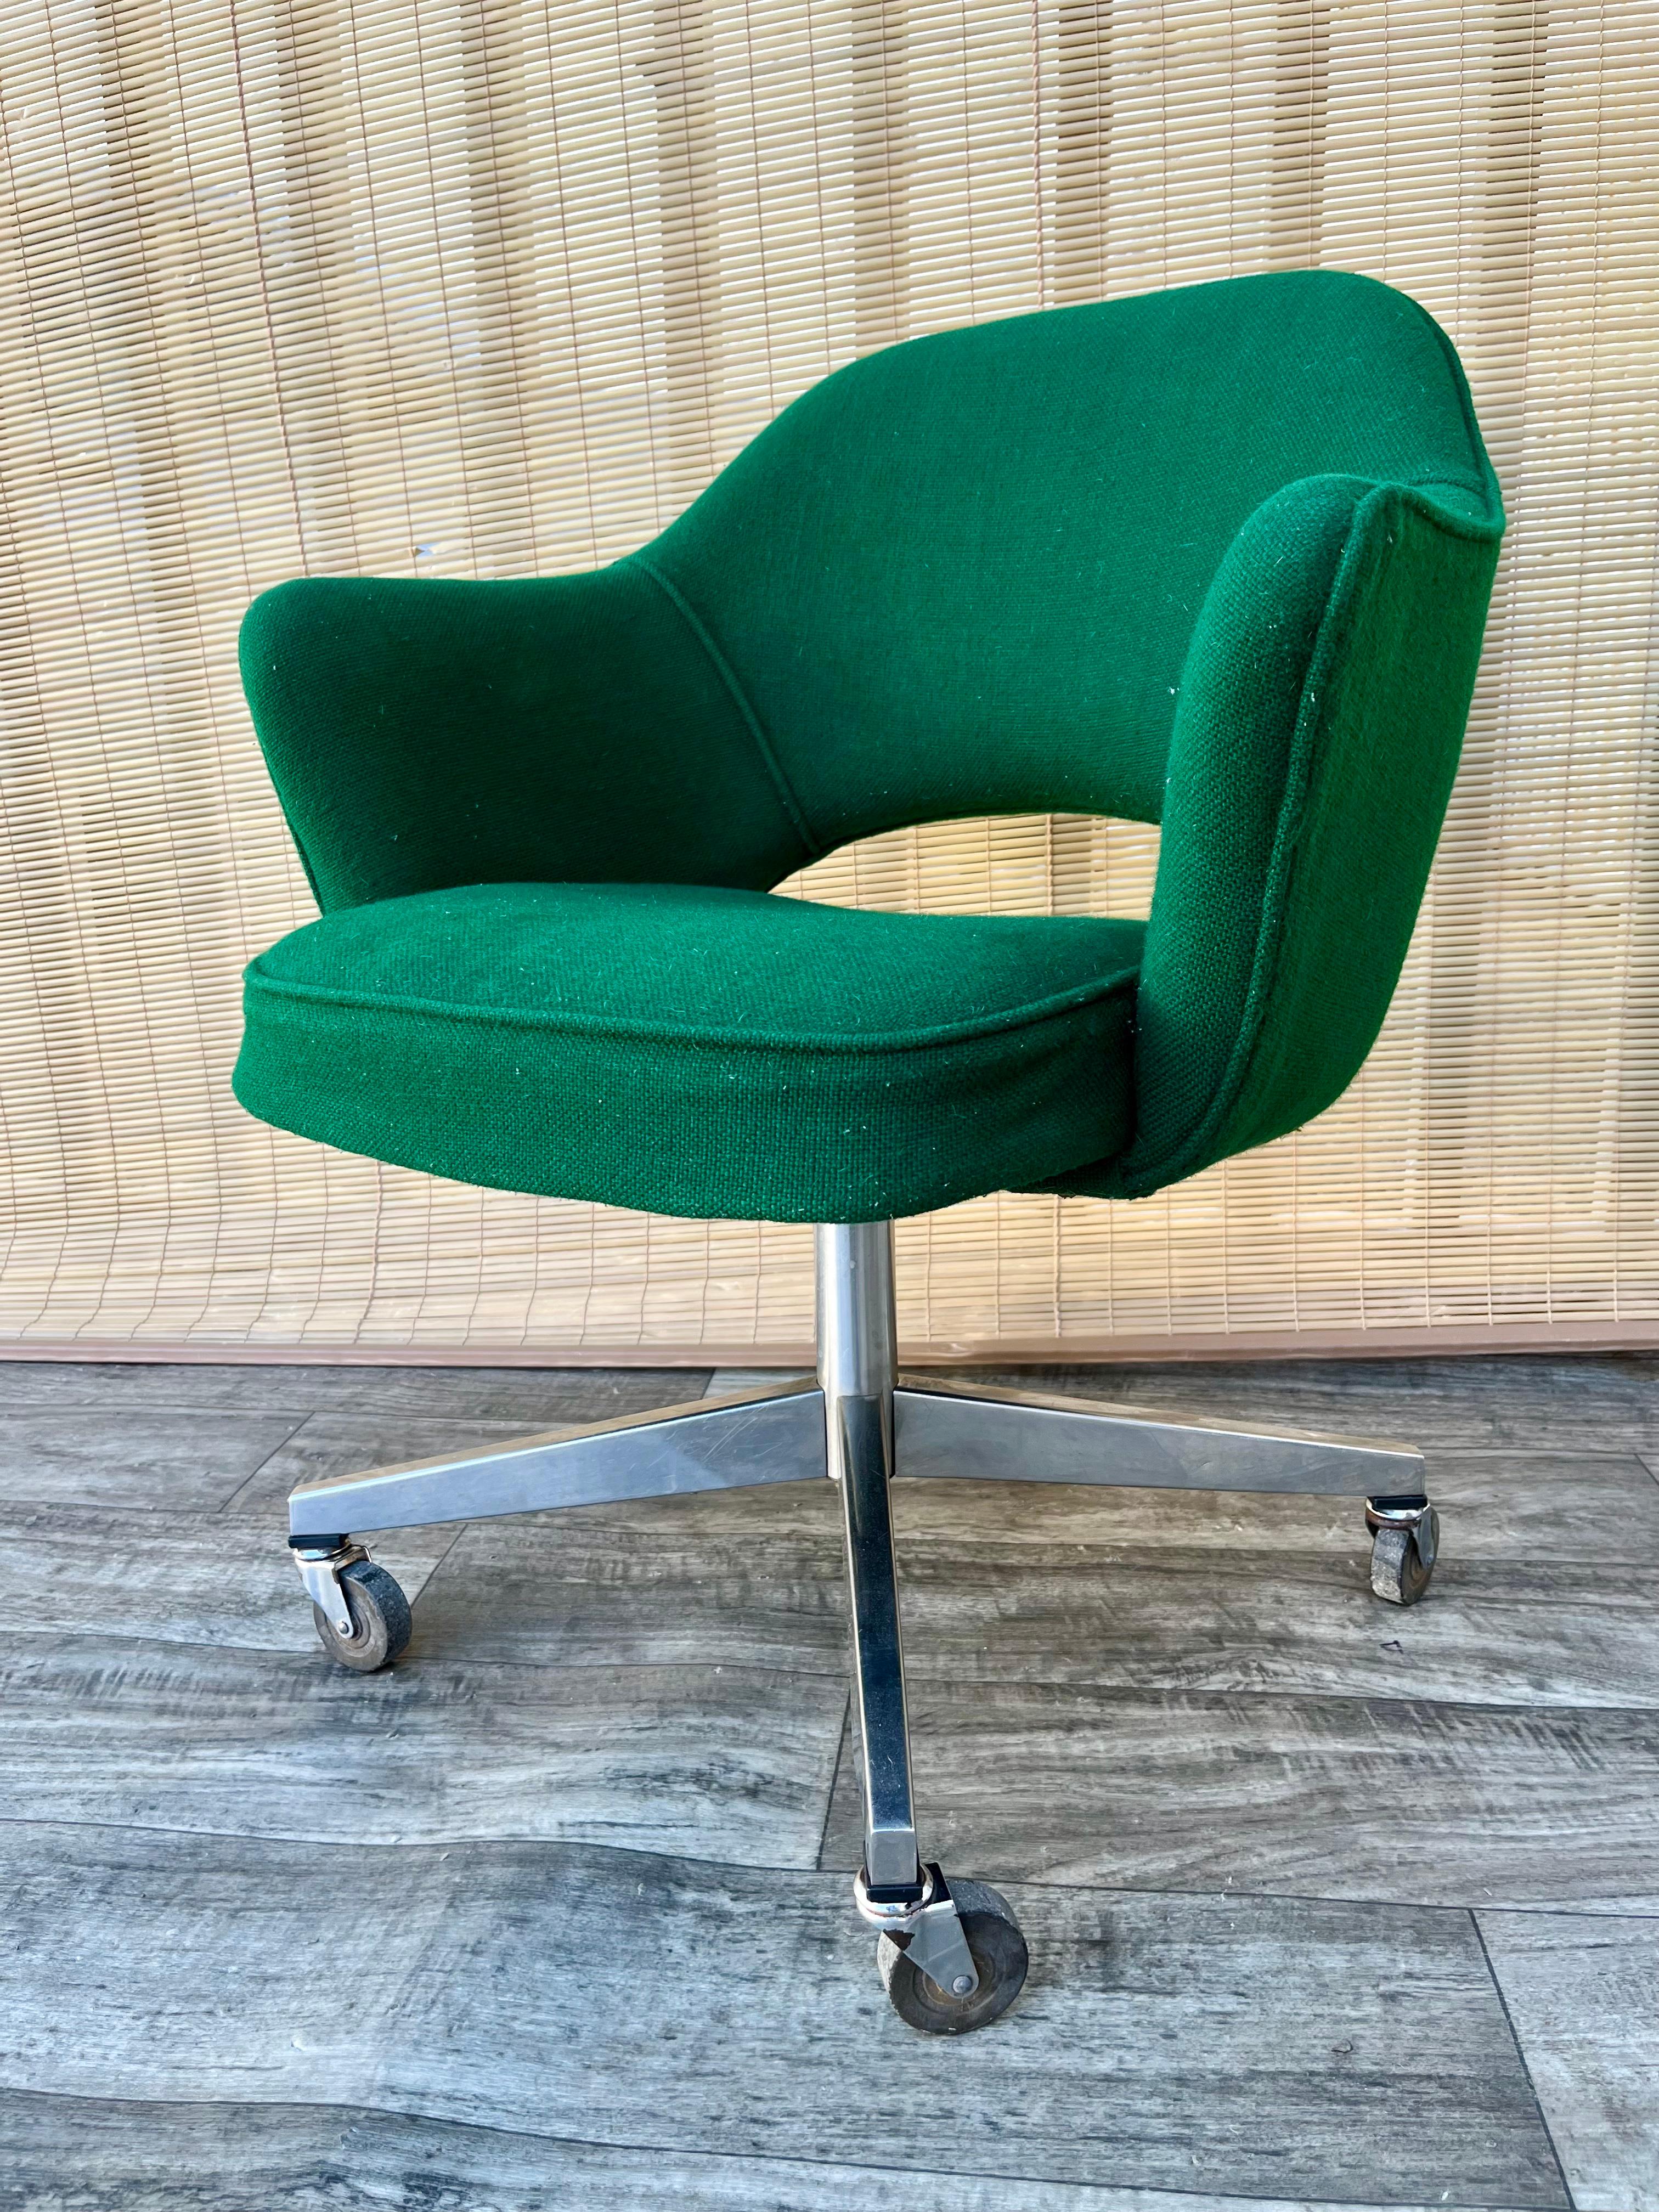 Vintage Mid Century Modern Office Chair mit Armlehnen von Saarinen für Knoll. Circa 1970er Jahre 
Mit der originalen jagdgrünen Twill-Polsterung und Rollen für einfache Mobilität.
Der Stuhl lässt sich stufenlos kippen und schwenken.
In gutem